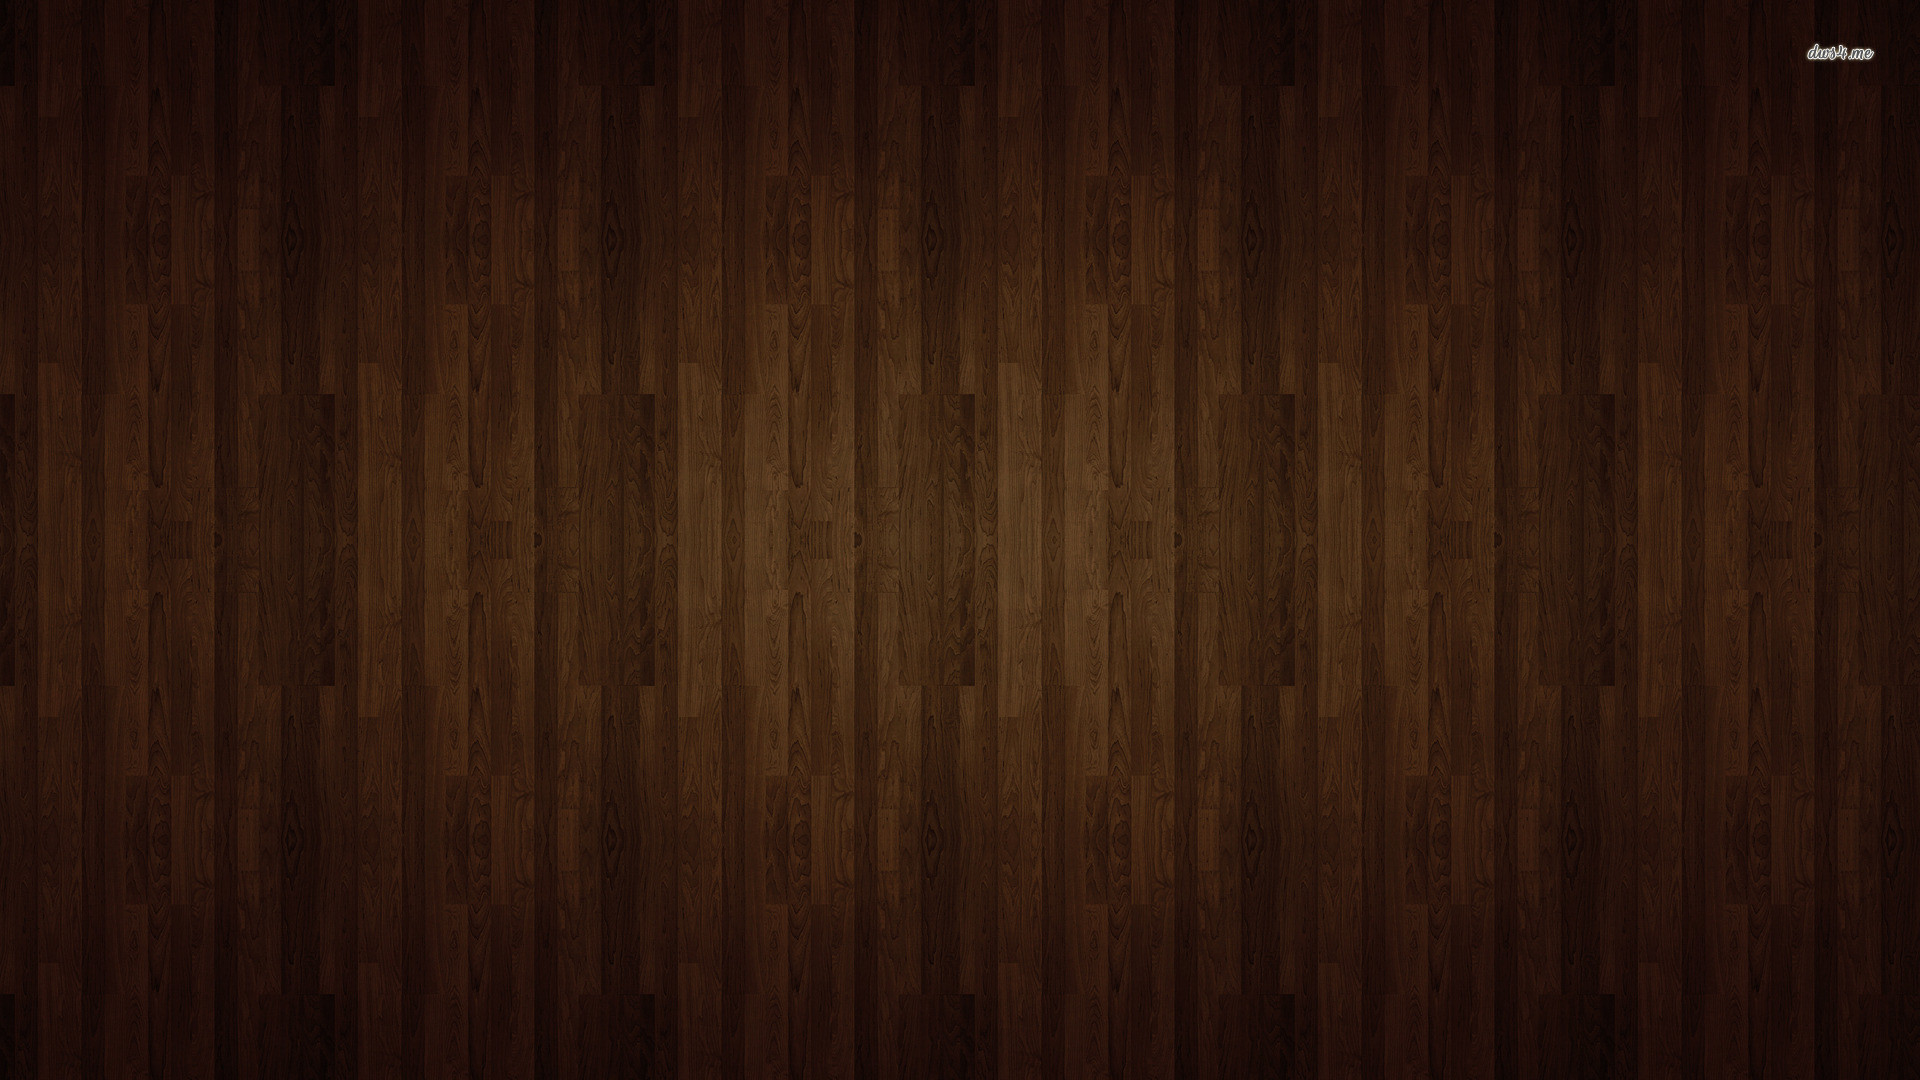 1920x1080 ... Hardwood Flooring Wallpaper And Hardwood Floor Wallpaper Abstract ...